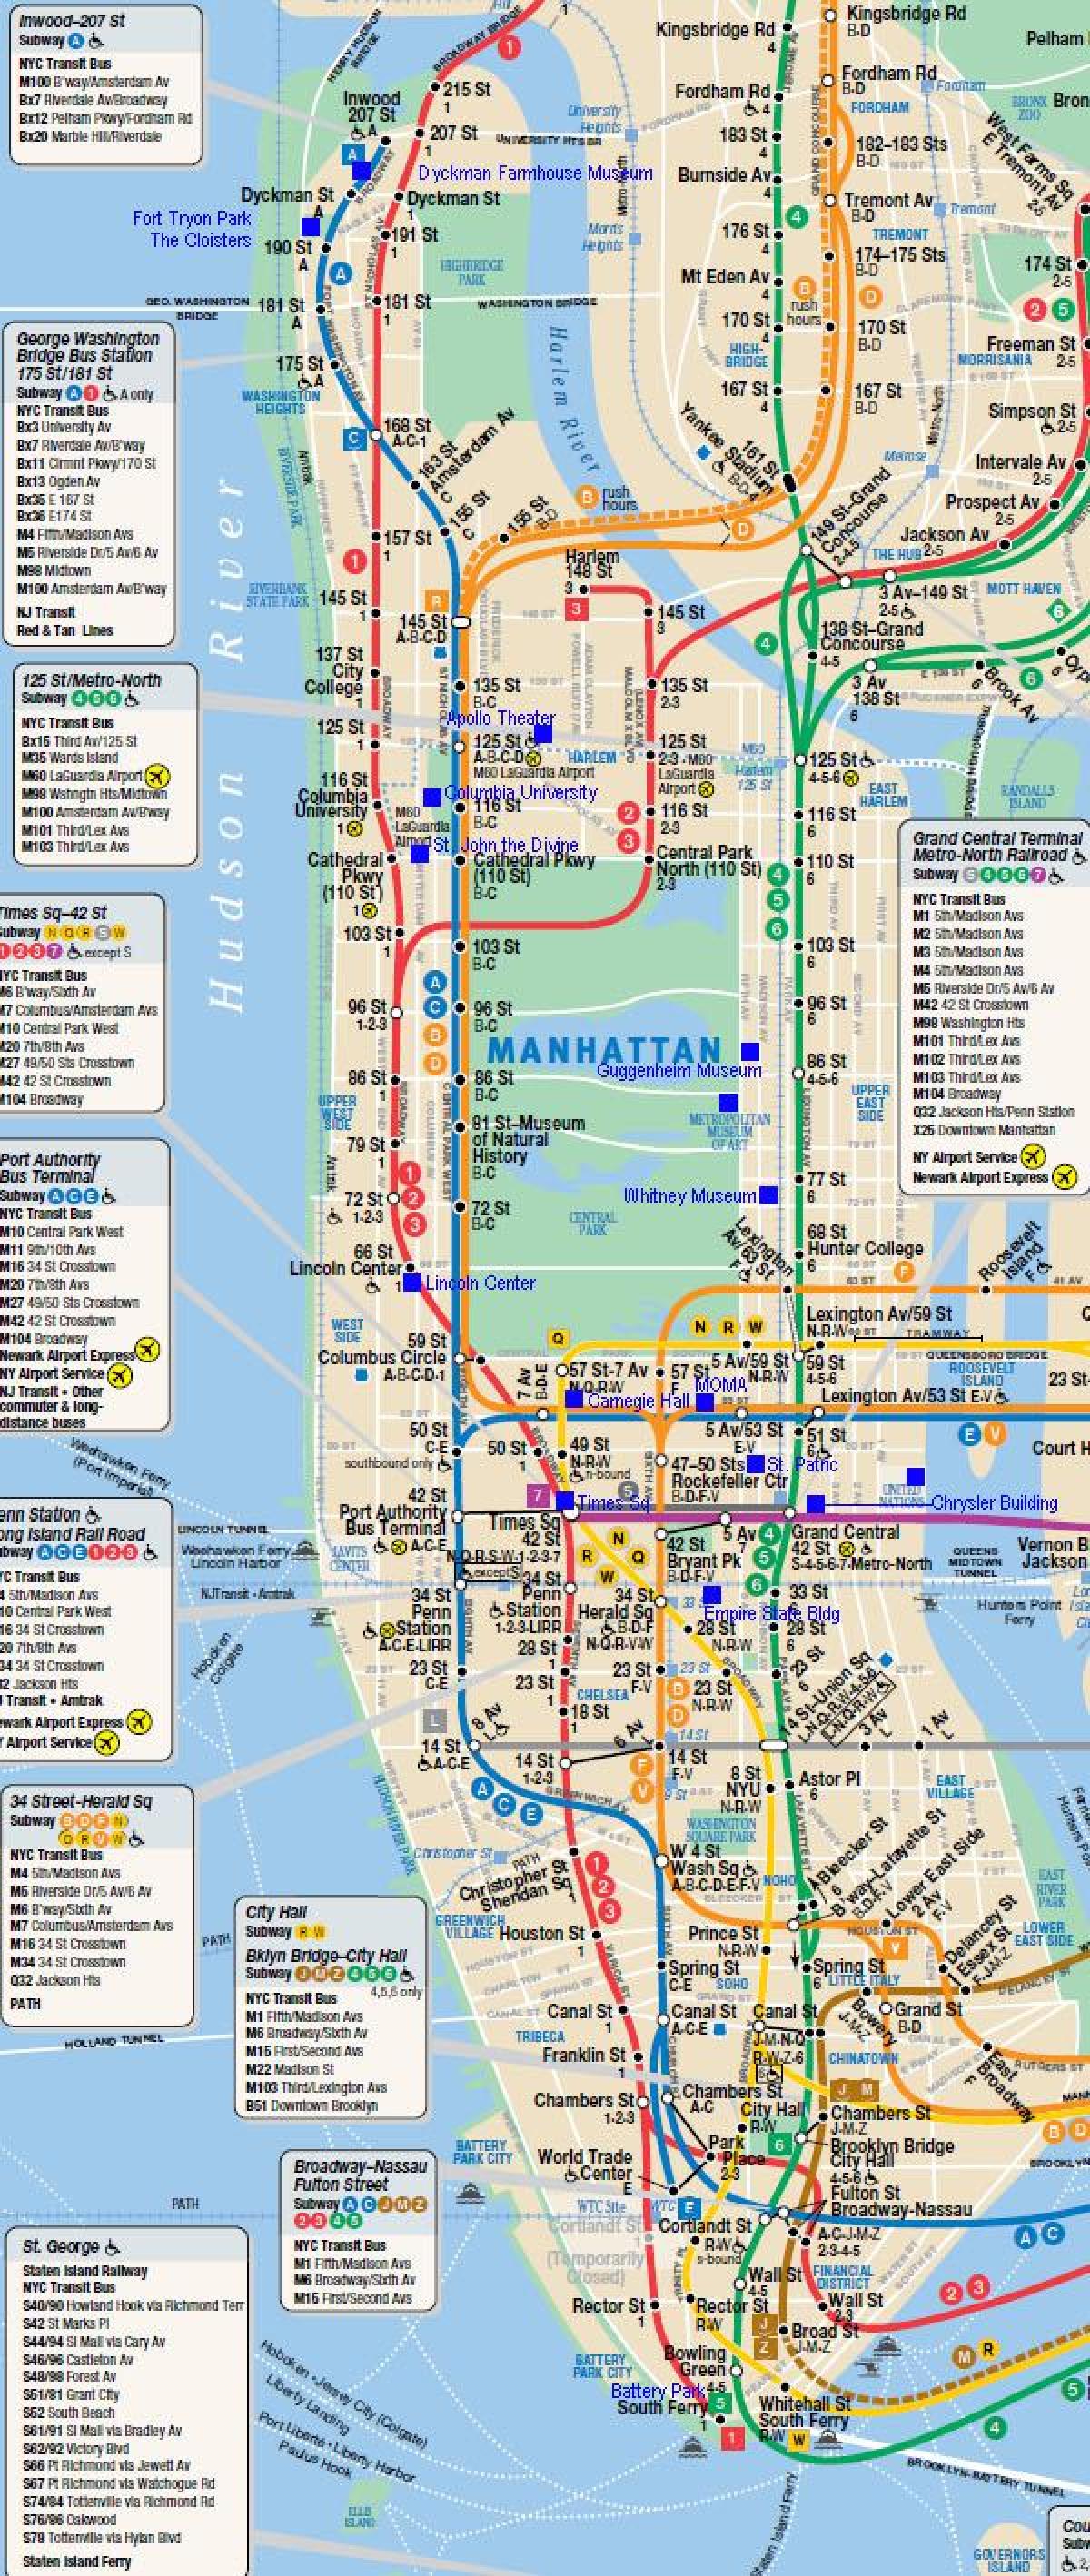 Манхэттэн төмөр замын газрын зураг нь